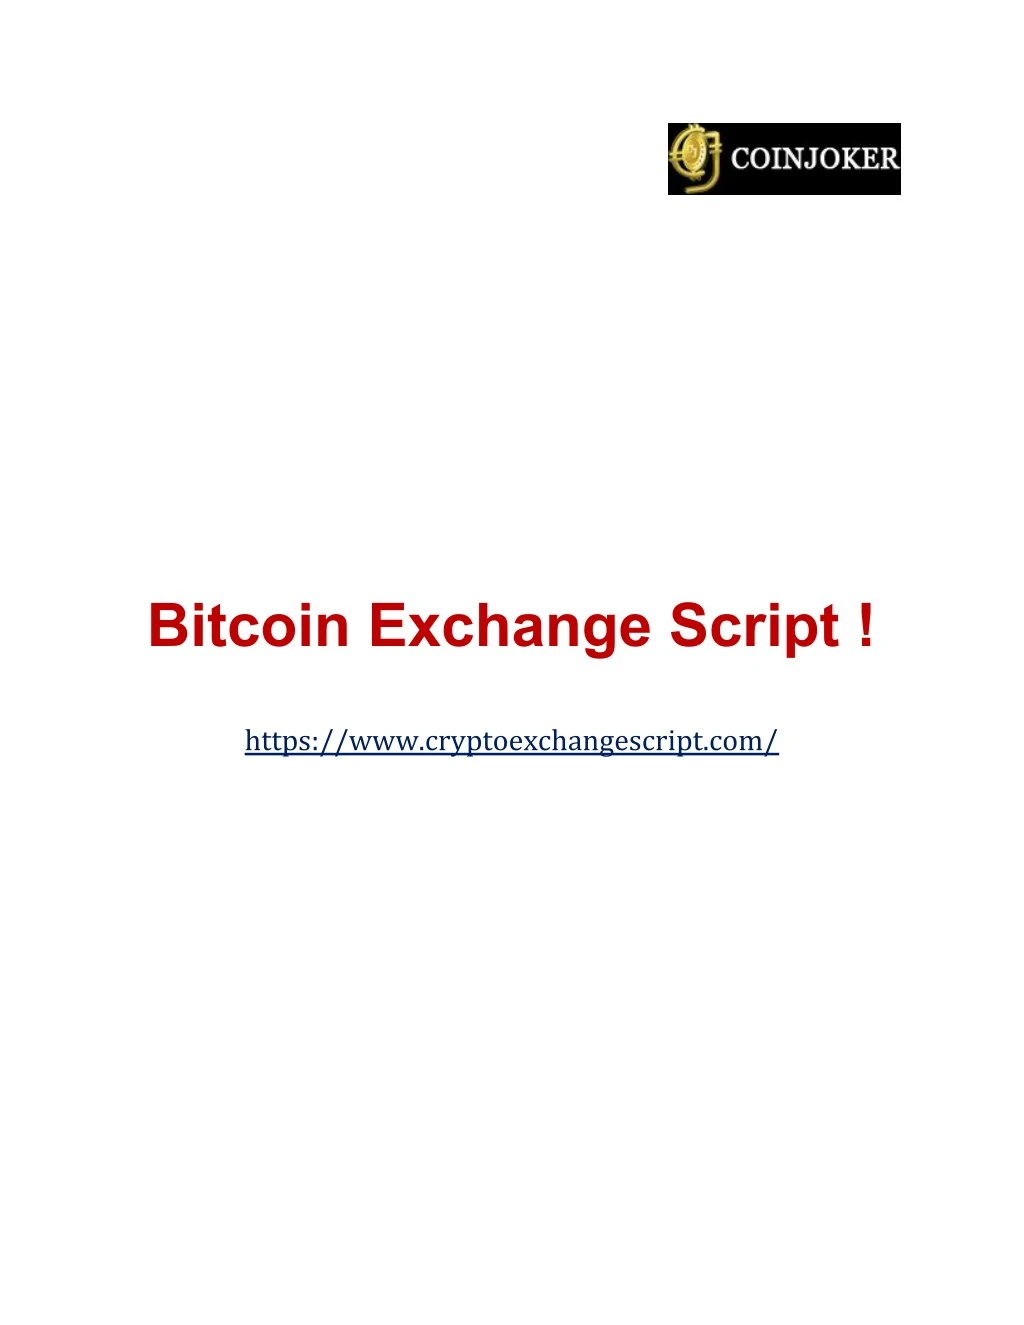 bitcoin exchange script https